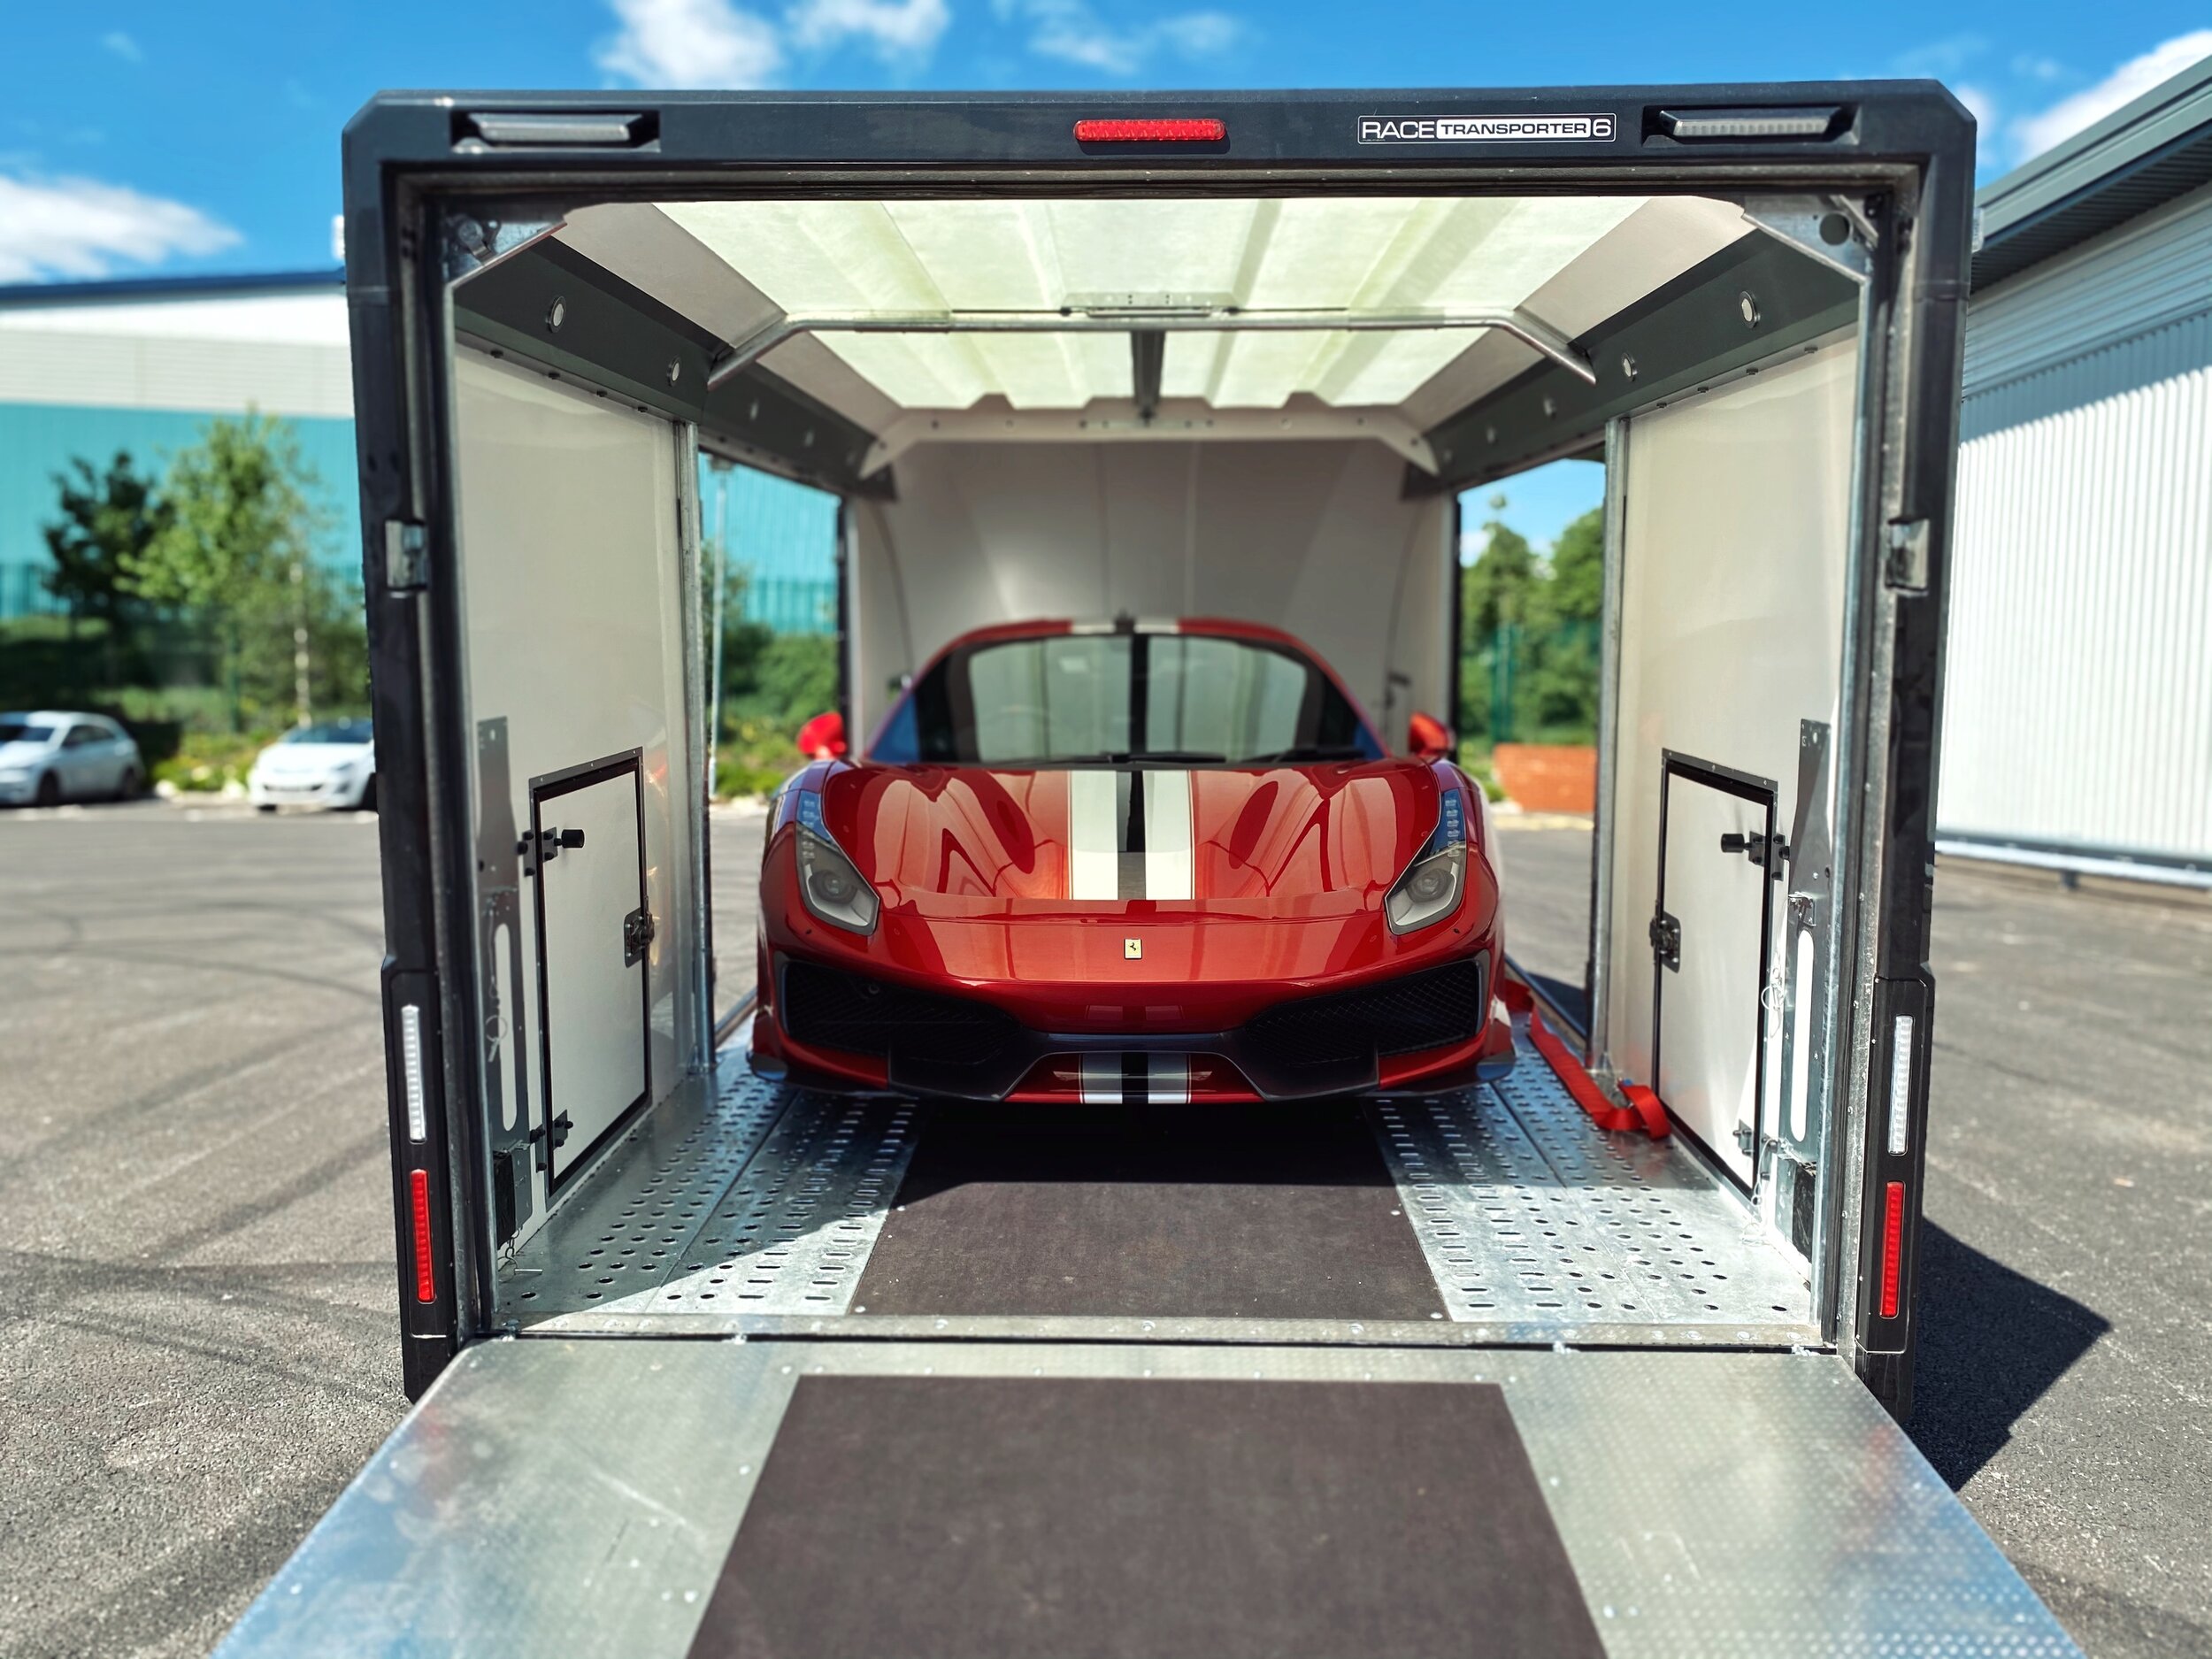 Ferrari Covered Transport